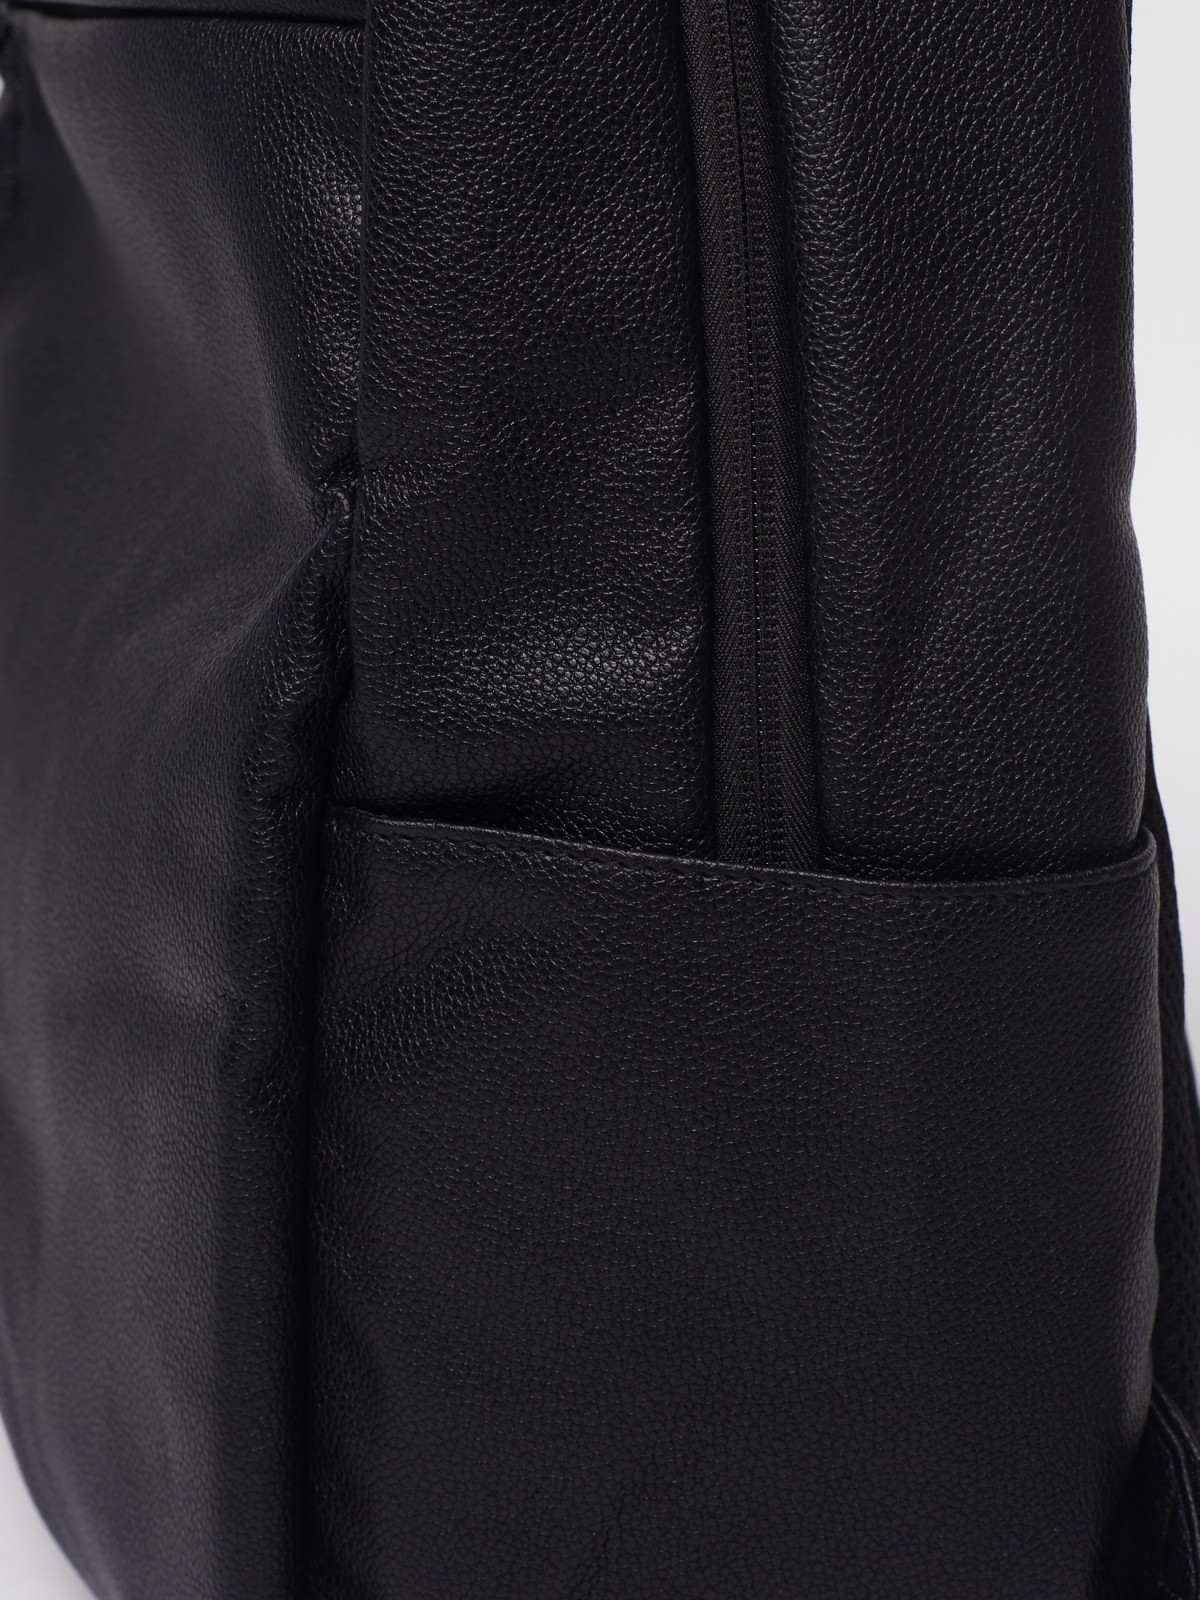 Городской рюкзак из экокожи zolla 012319462135, цвет черный, размер No_size - фото 2